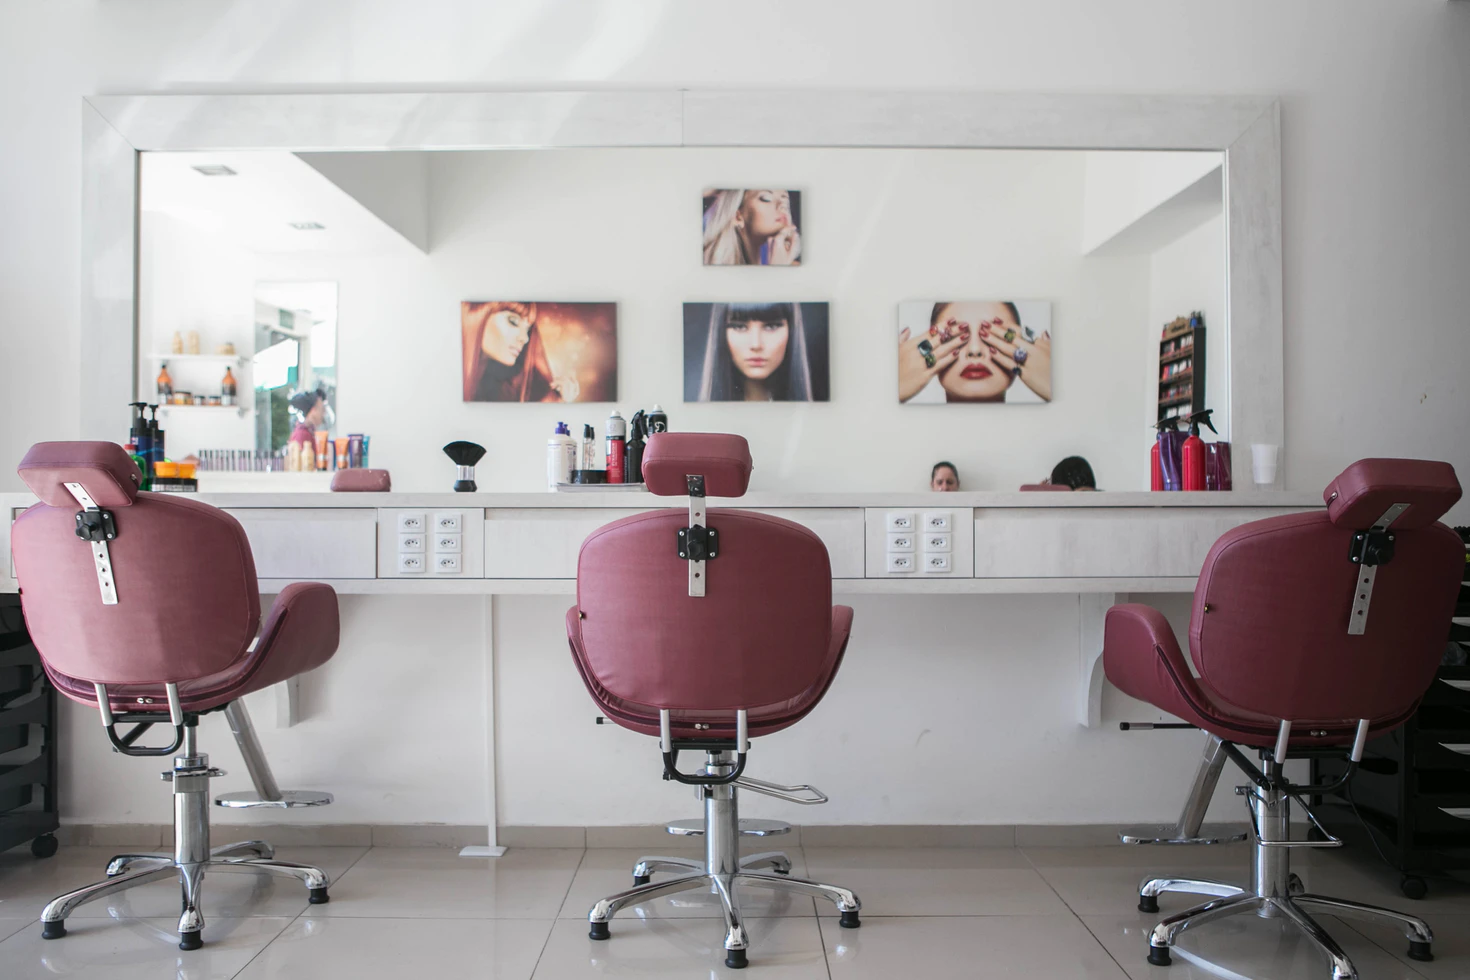  A imagem mostra um salão de beleza com paredes brancas com fotos de modelos penduradas. Há três cadeiras de clientes e um espelho grande.